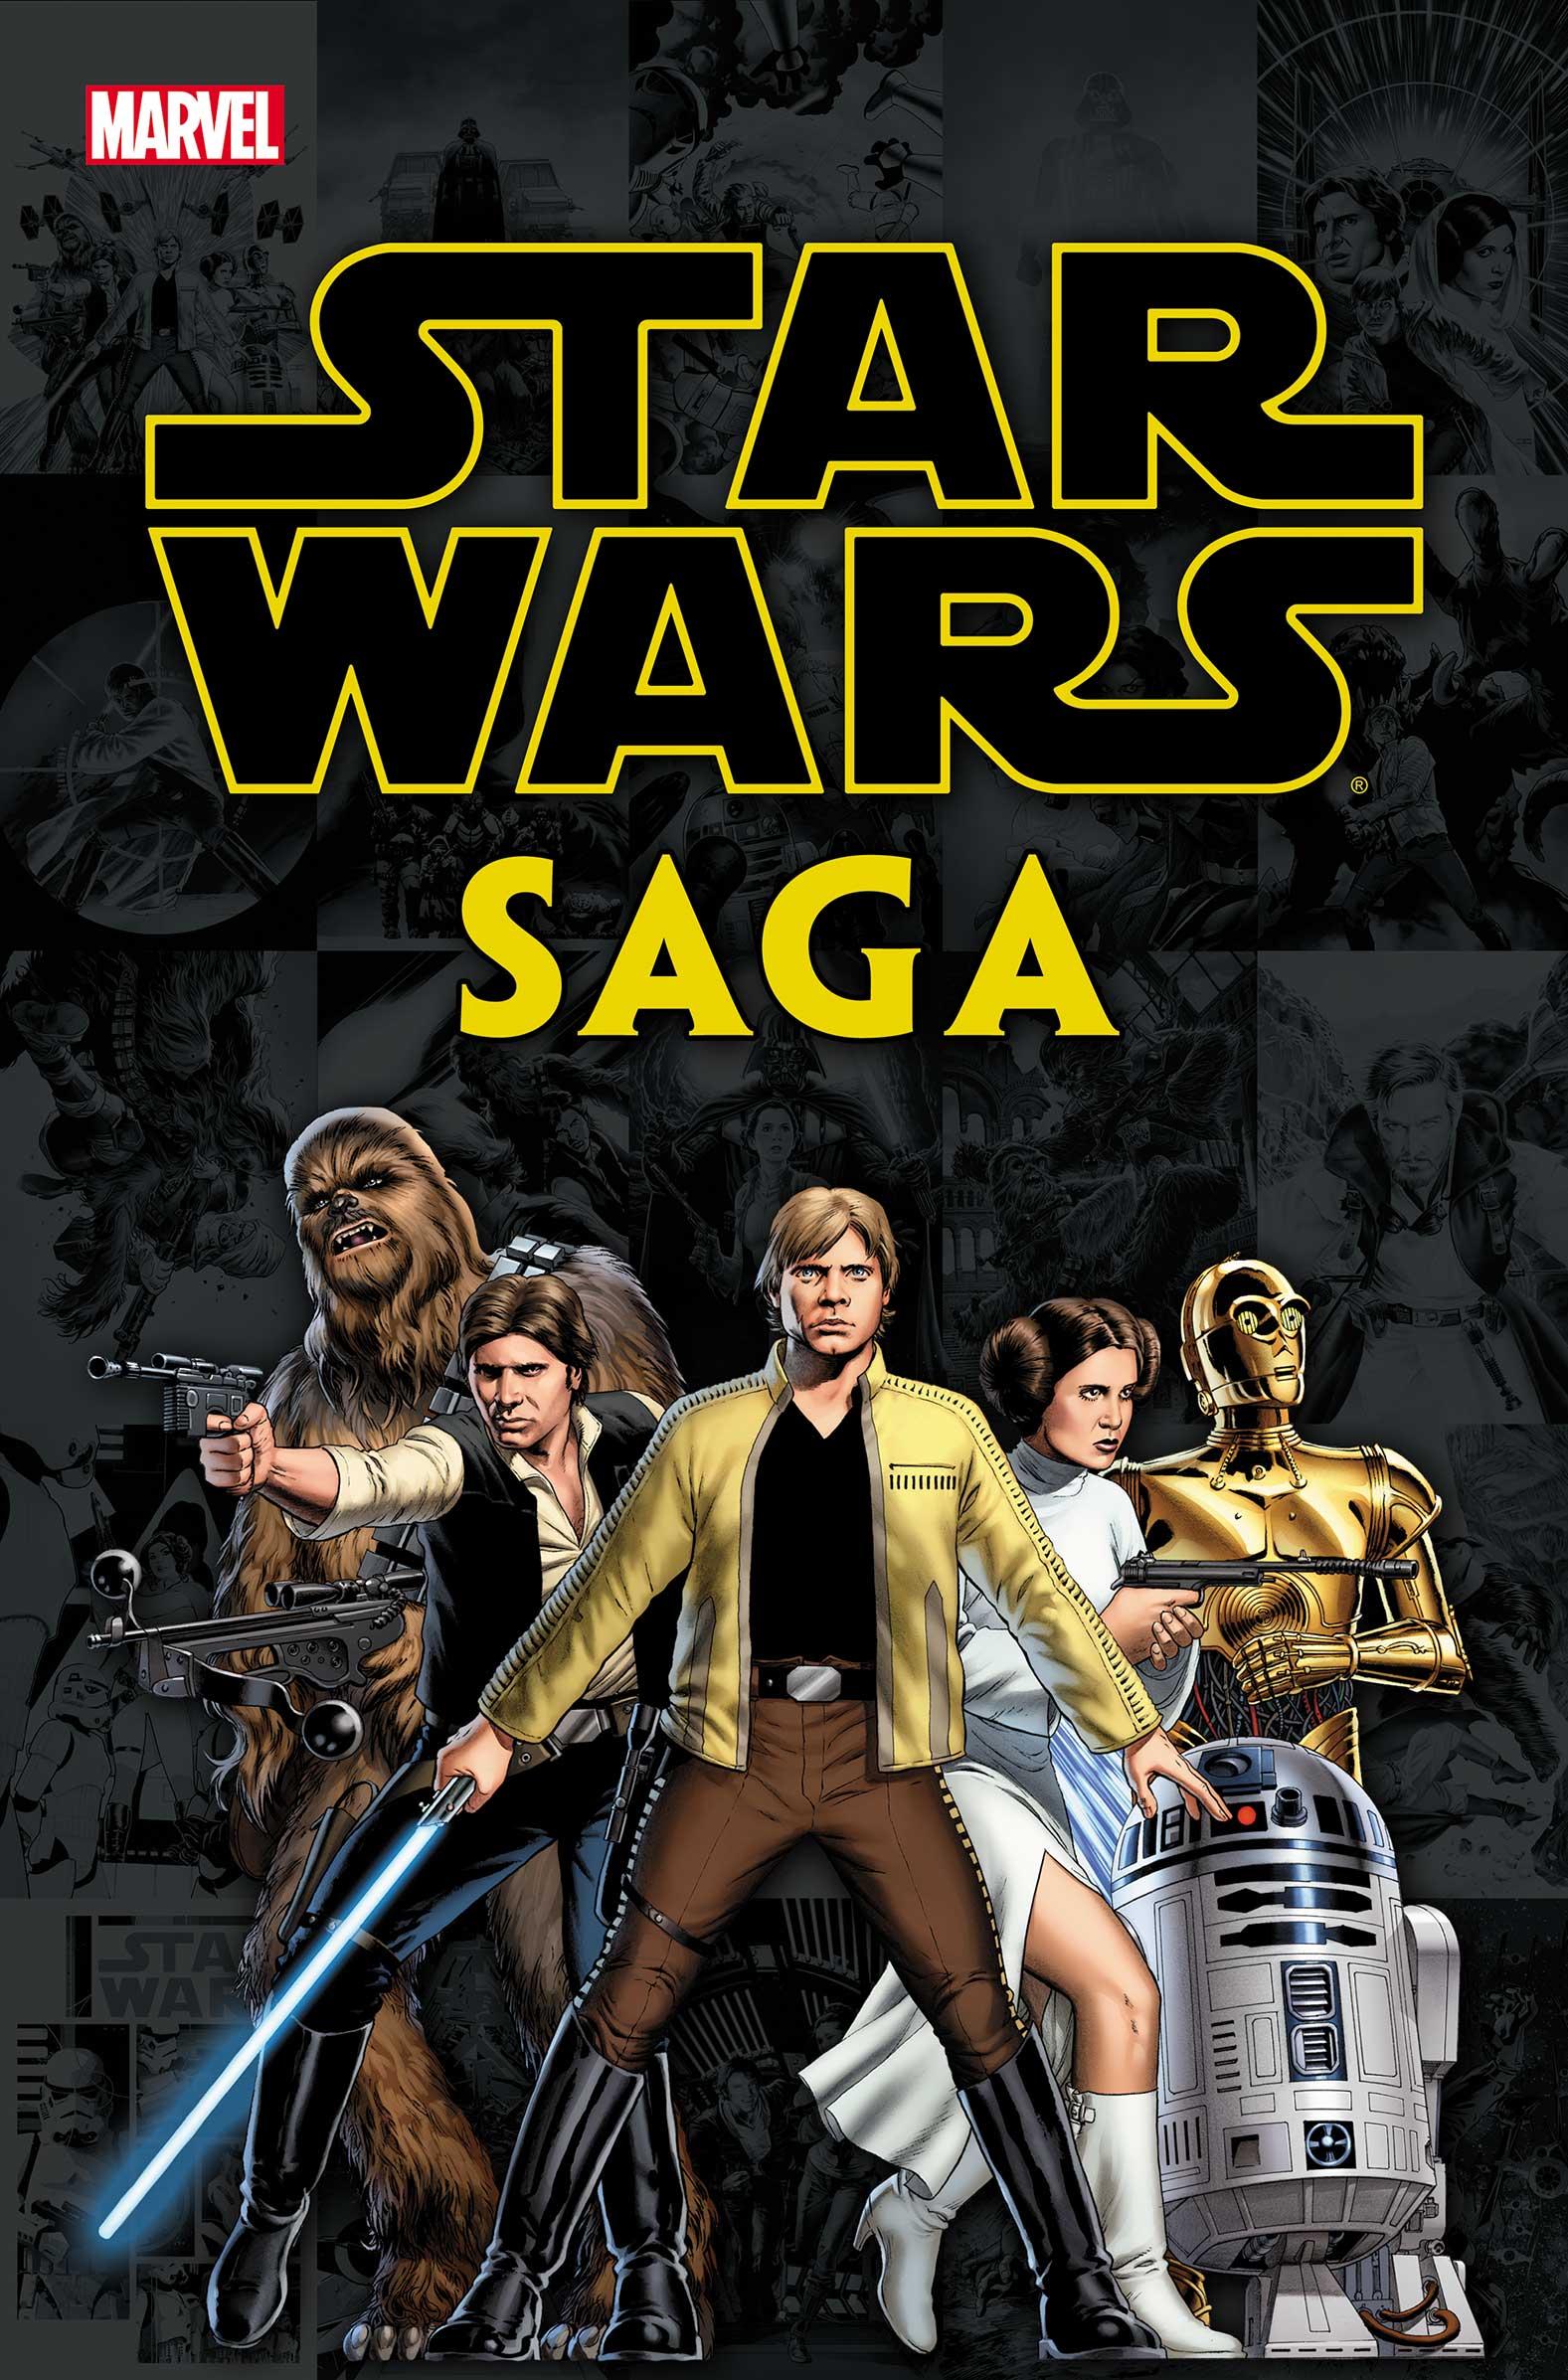 Star Wars Saga Vol. 1 #1